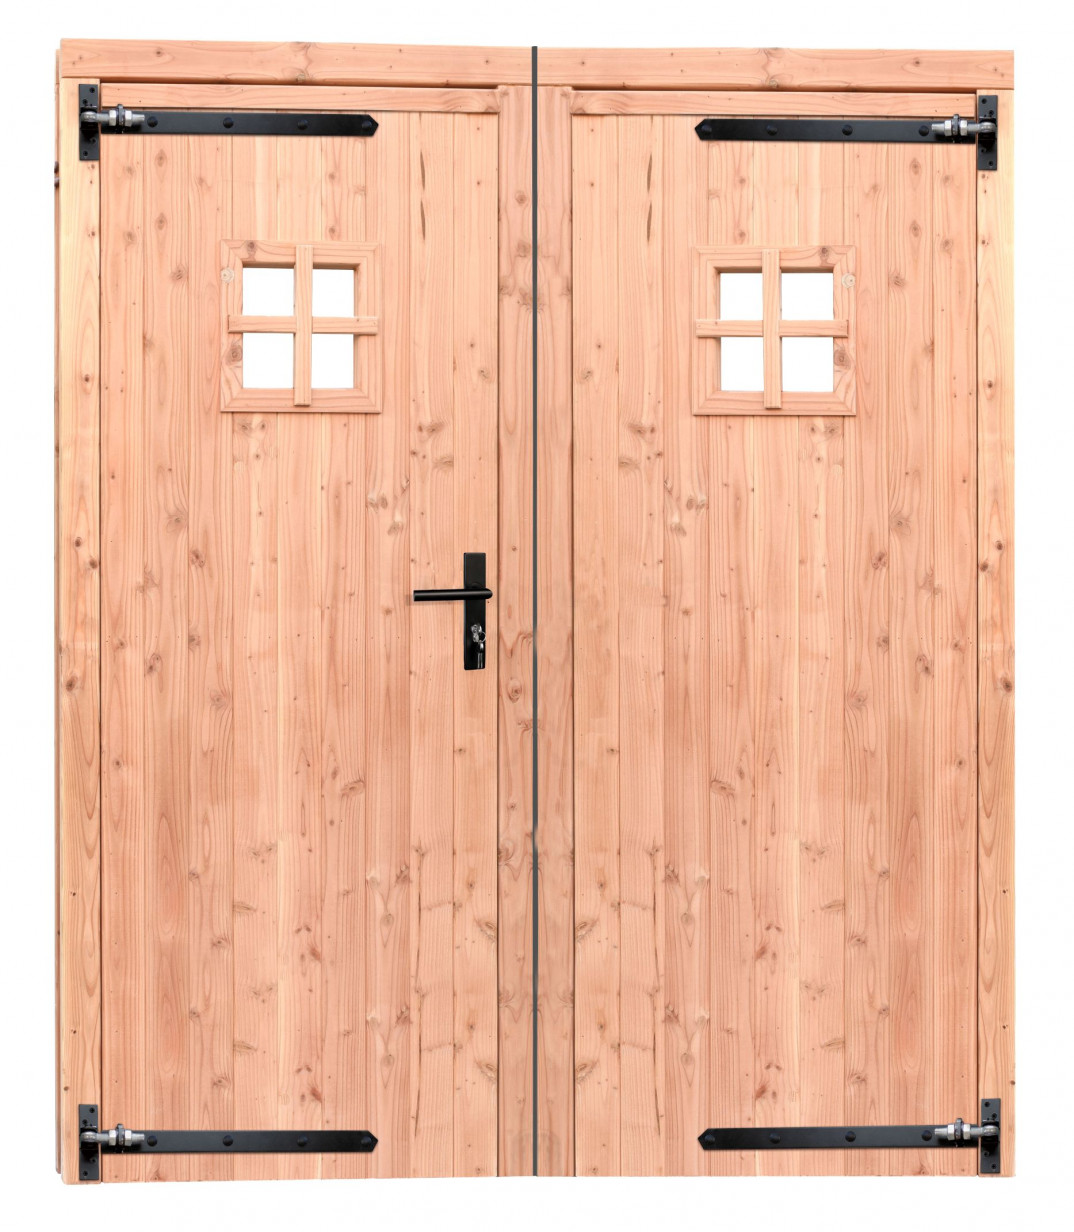 Woodvision | Douglas dubbele deur met raam | Zwart beslag | 168 x 201 cm | Kleurloos geïmpregneerd